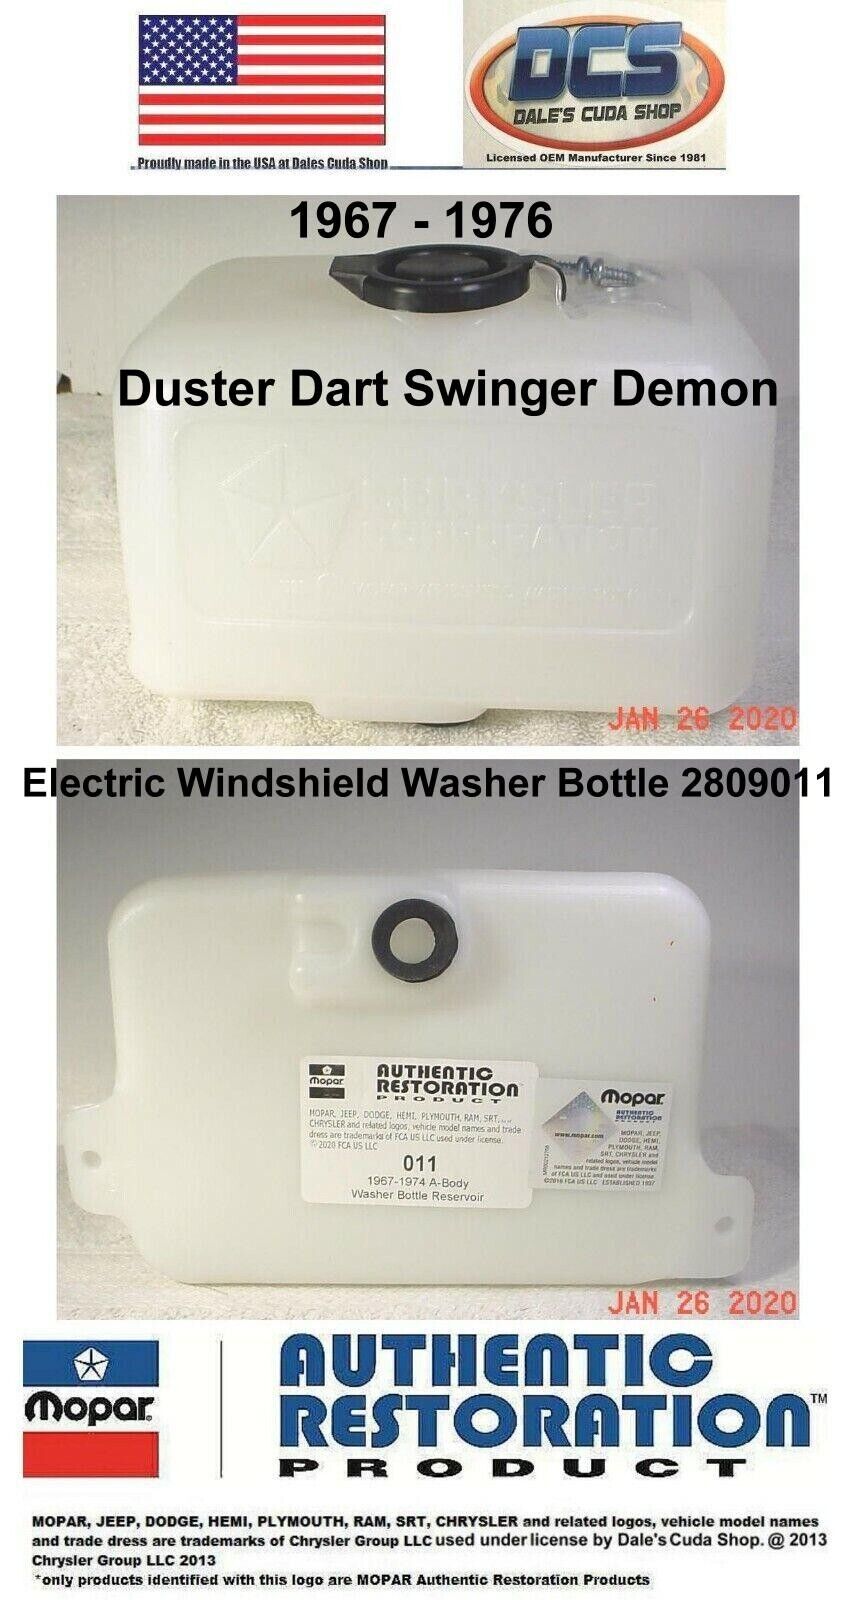 1967 - 76 Duster Dart Swinger Demon Electric Windshield Washer Bottle 2809011